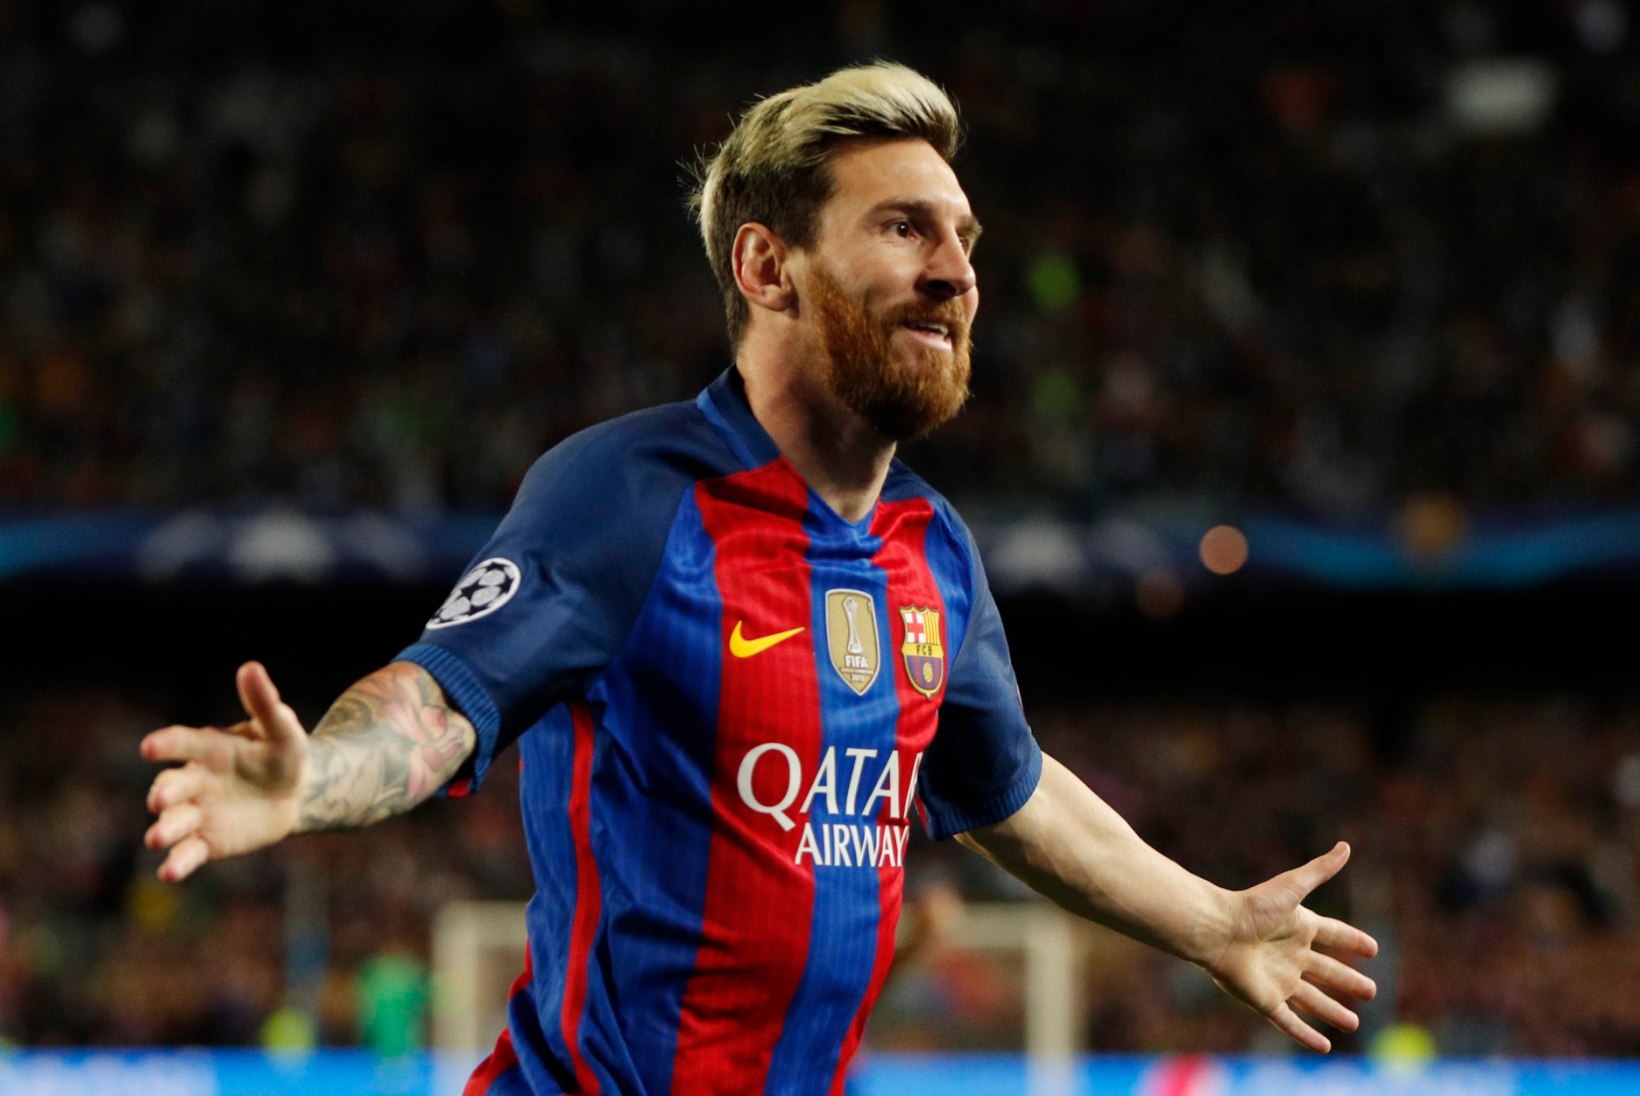 NII SEE JUHTUS | Sport 19.10: Messi hiilgas, Kangur tabas võiduviske ja Johaug sai võistluskeelu